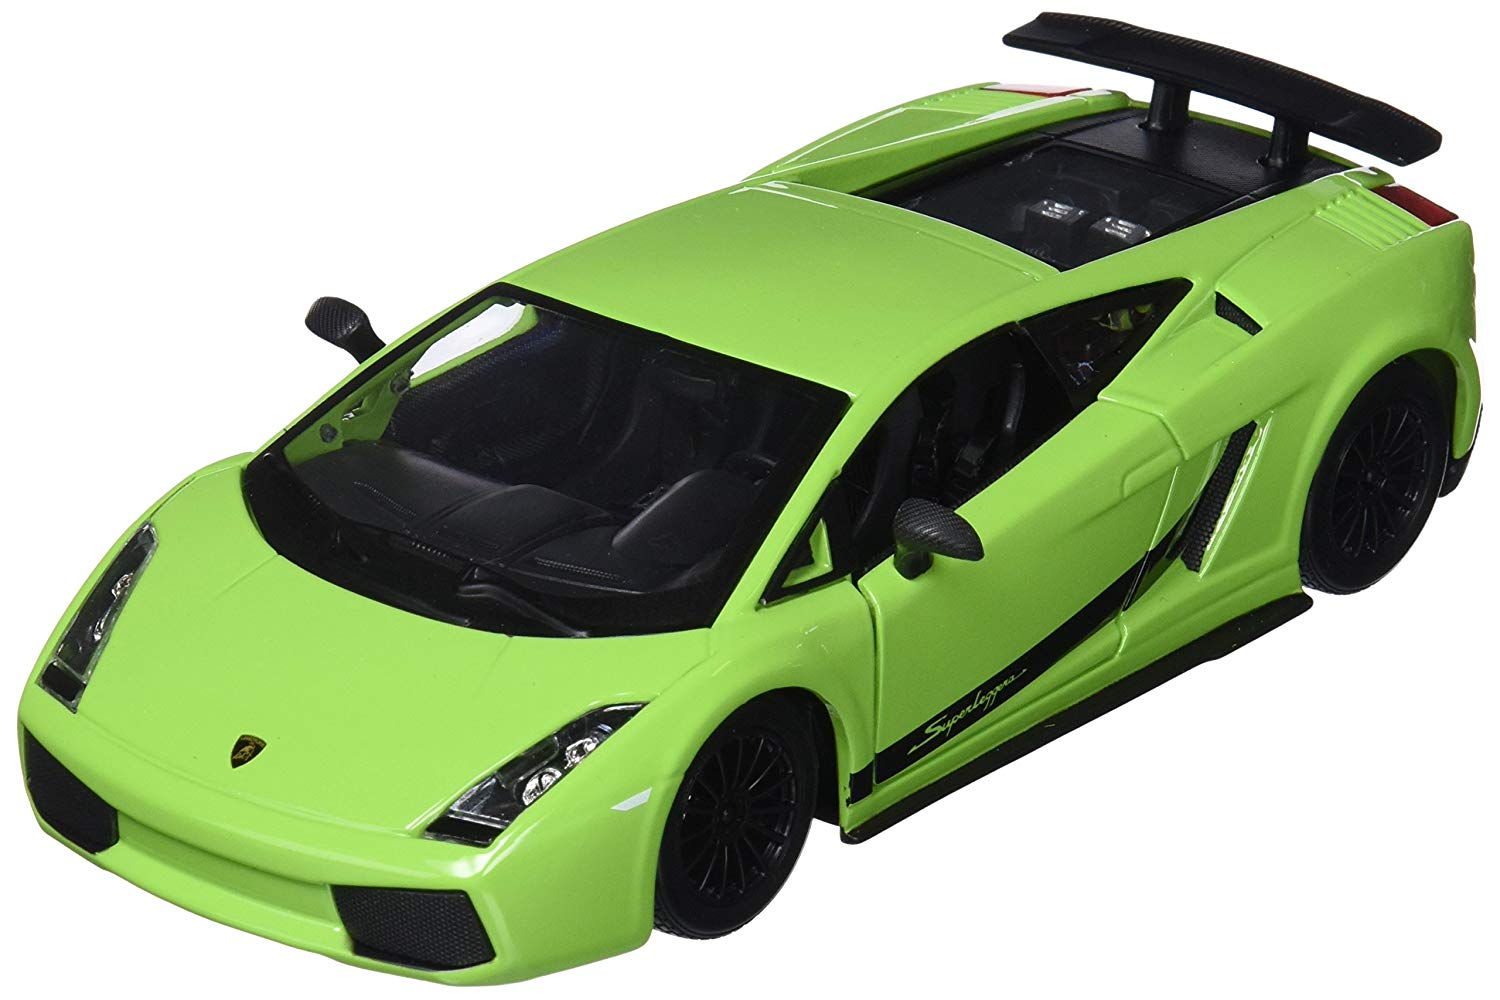 Bburago 1: 24 Wb Lamborghini Gallardo Toy Car – Green (22108 18 G.).